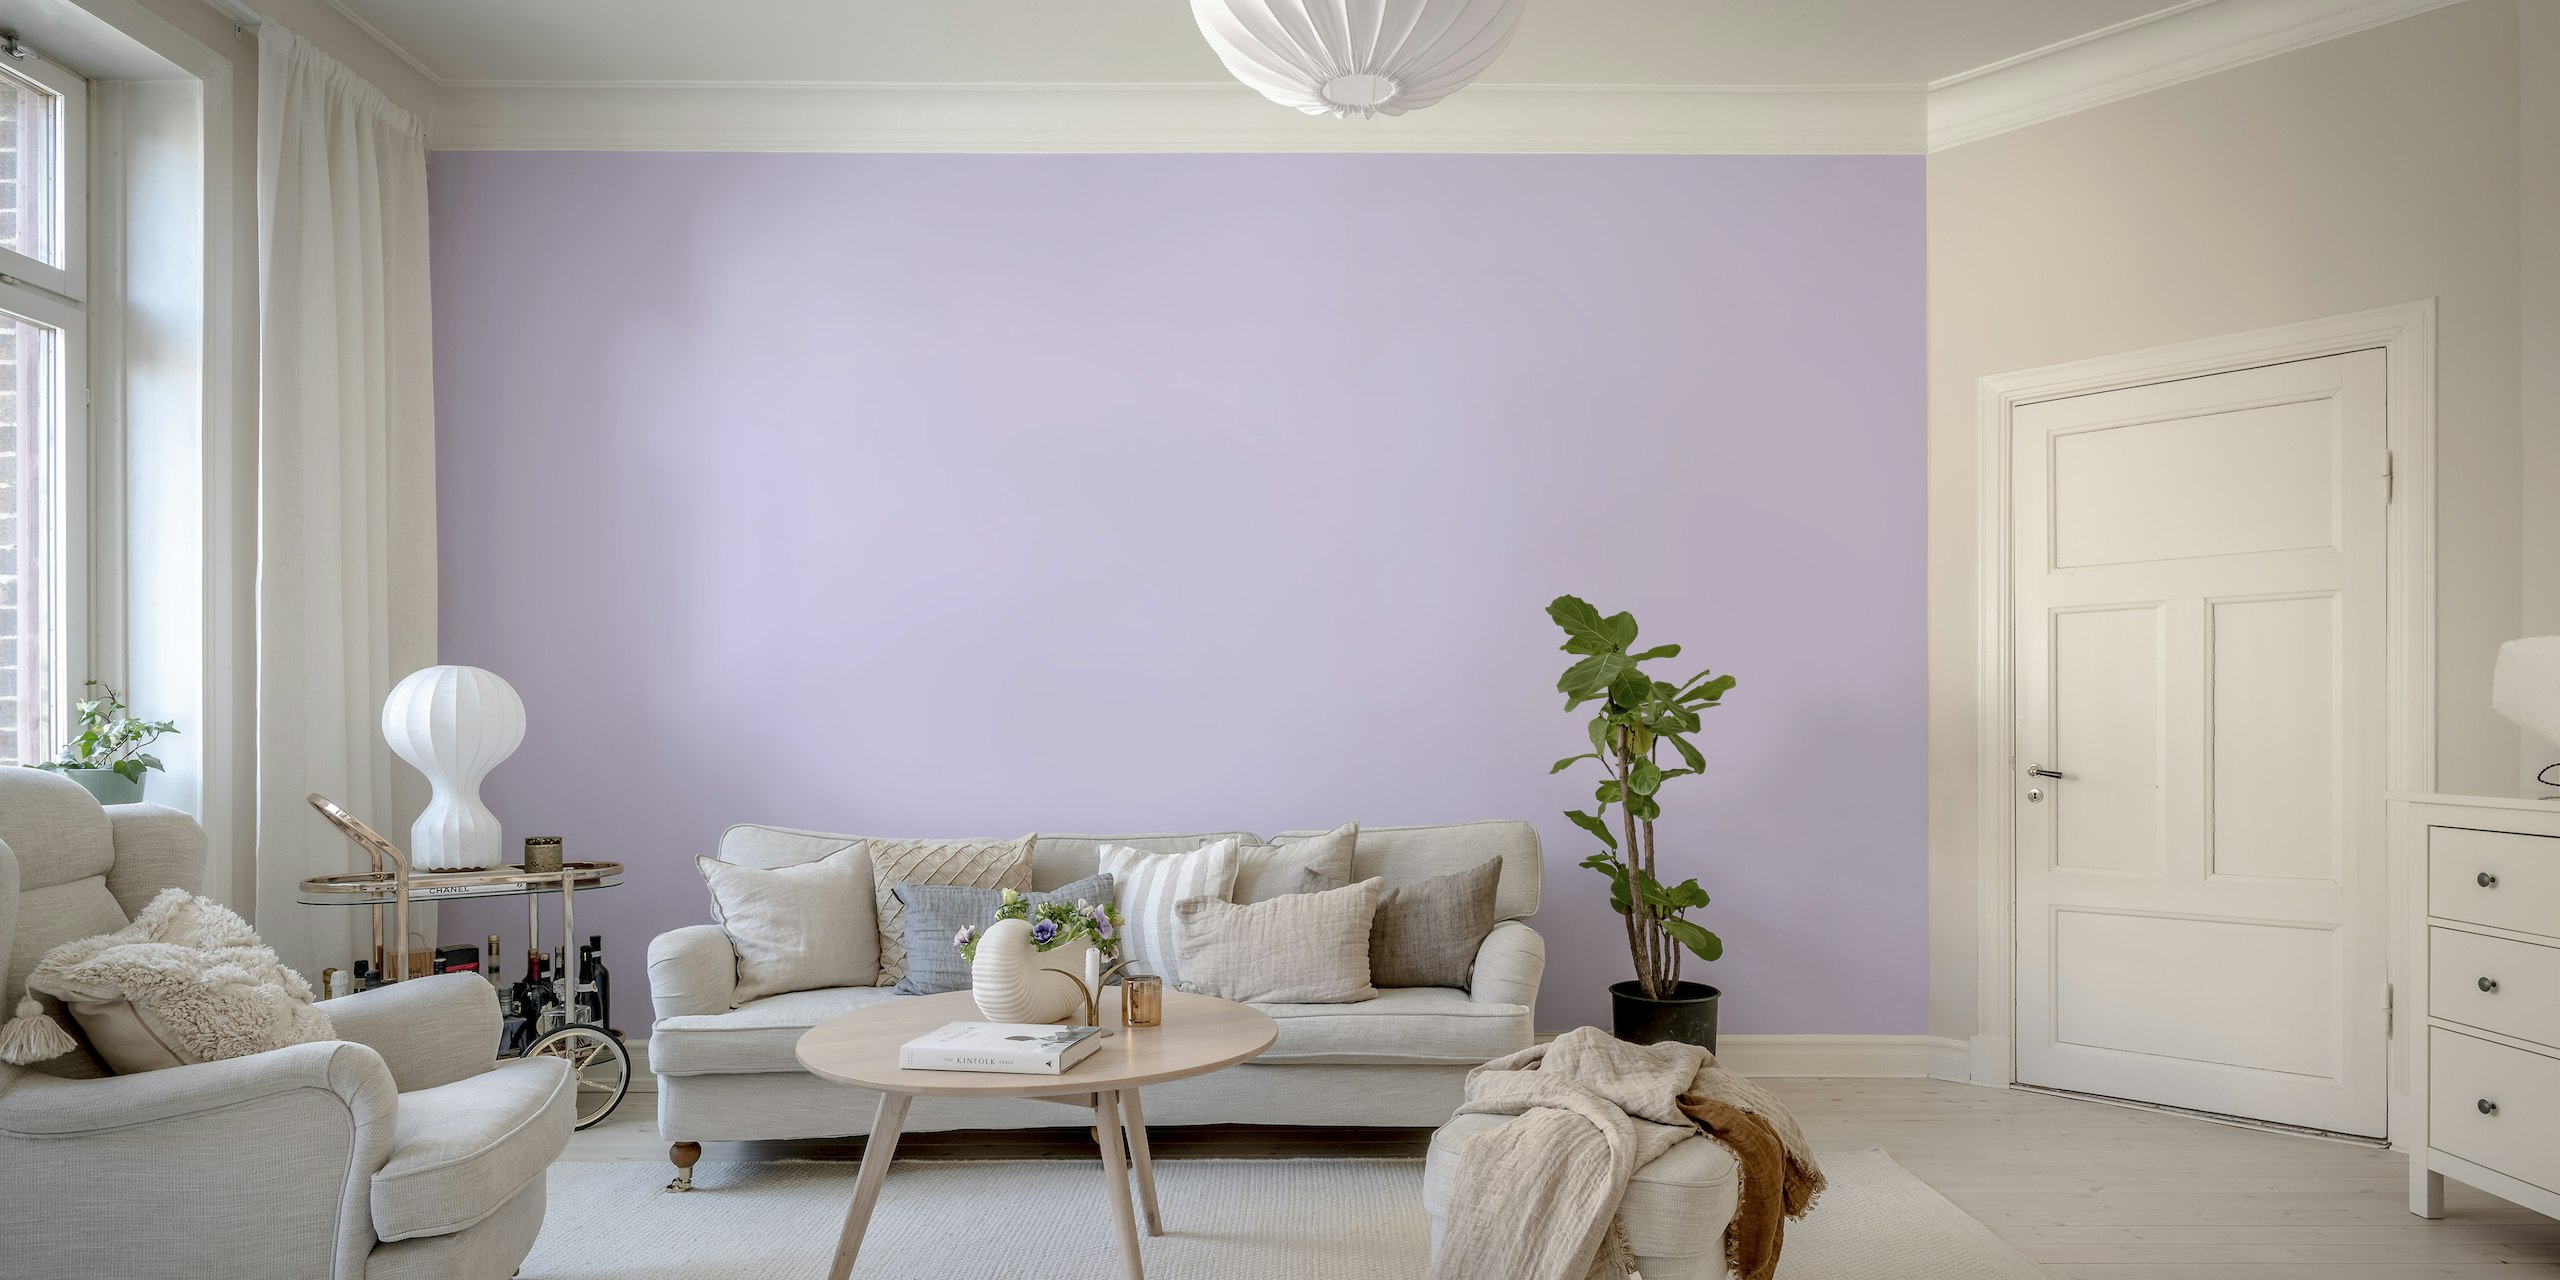 Lilac Solid Color Wallpaper papel pintado